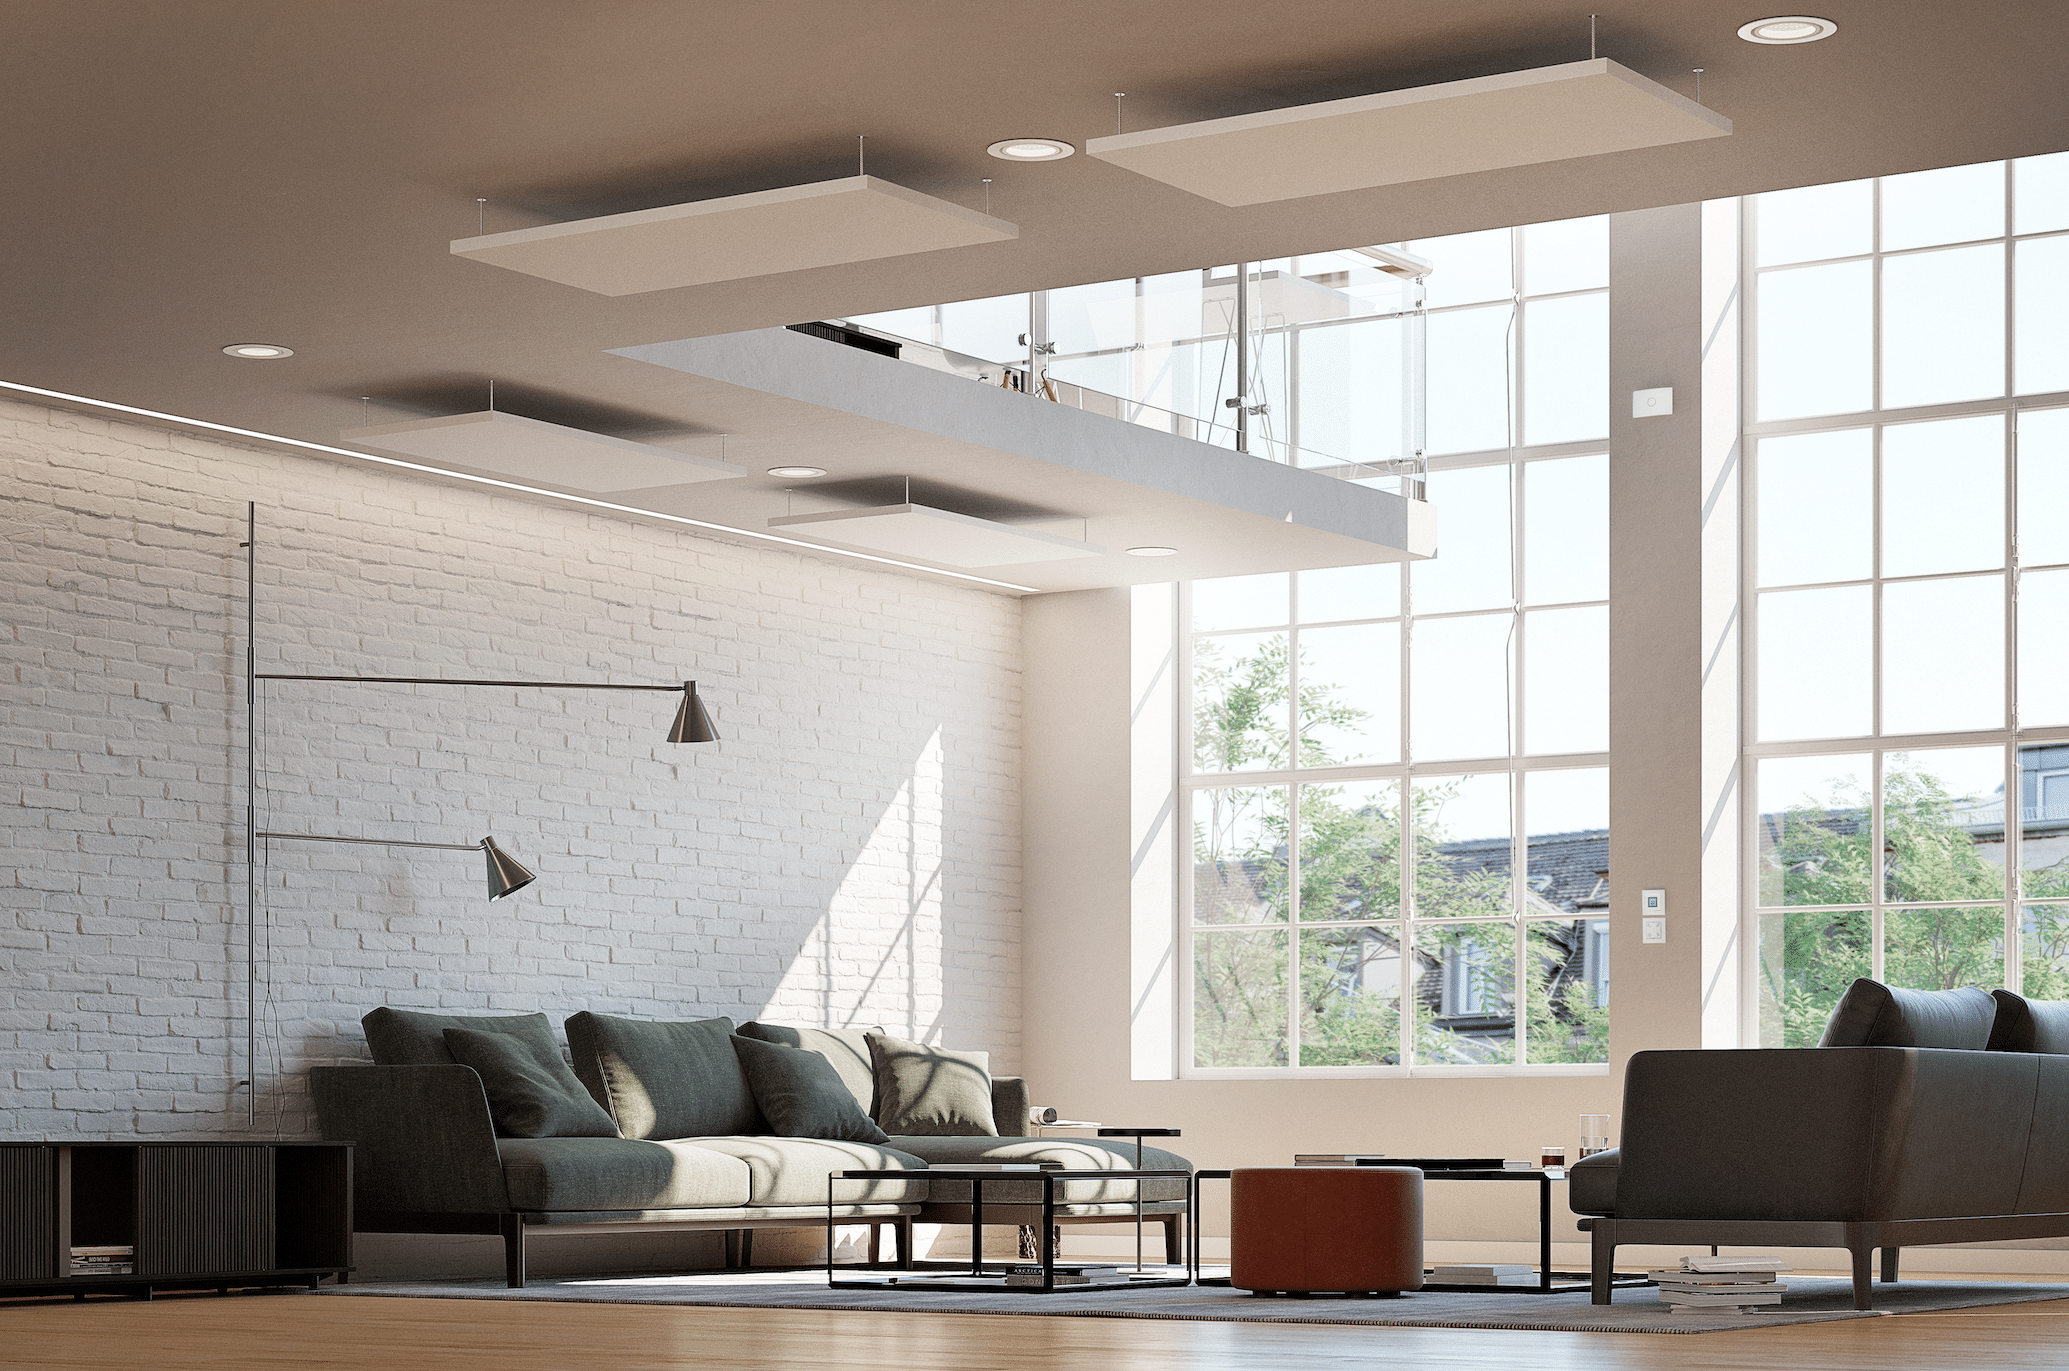 Dimplex zeigt ein modernes Wohnzimmer mit großen Fenstern und einer Betonwand, einer dunkelgrüner Sitzlandschaft und einer Fussbodenheizung die unter dem Holzboden verlegt wurde.